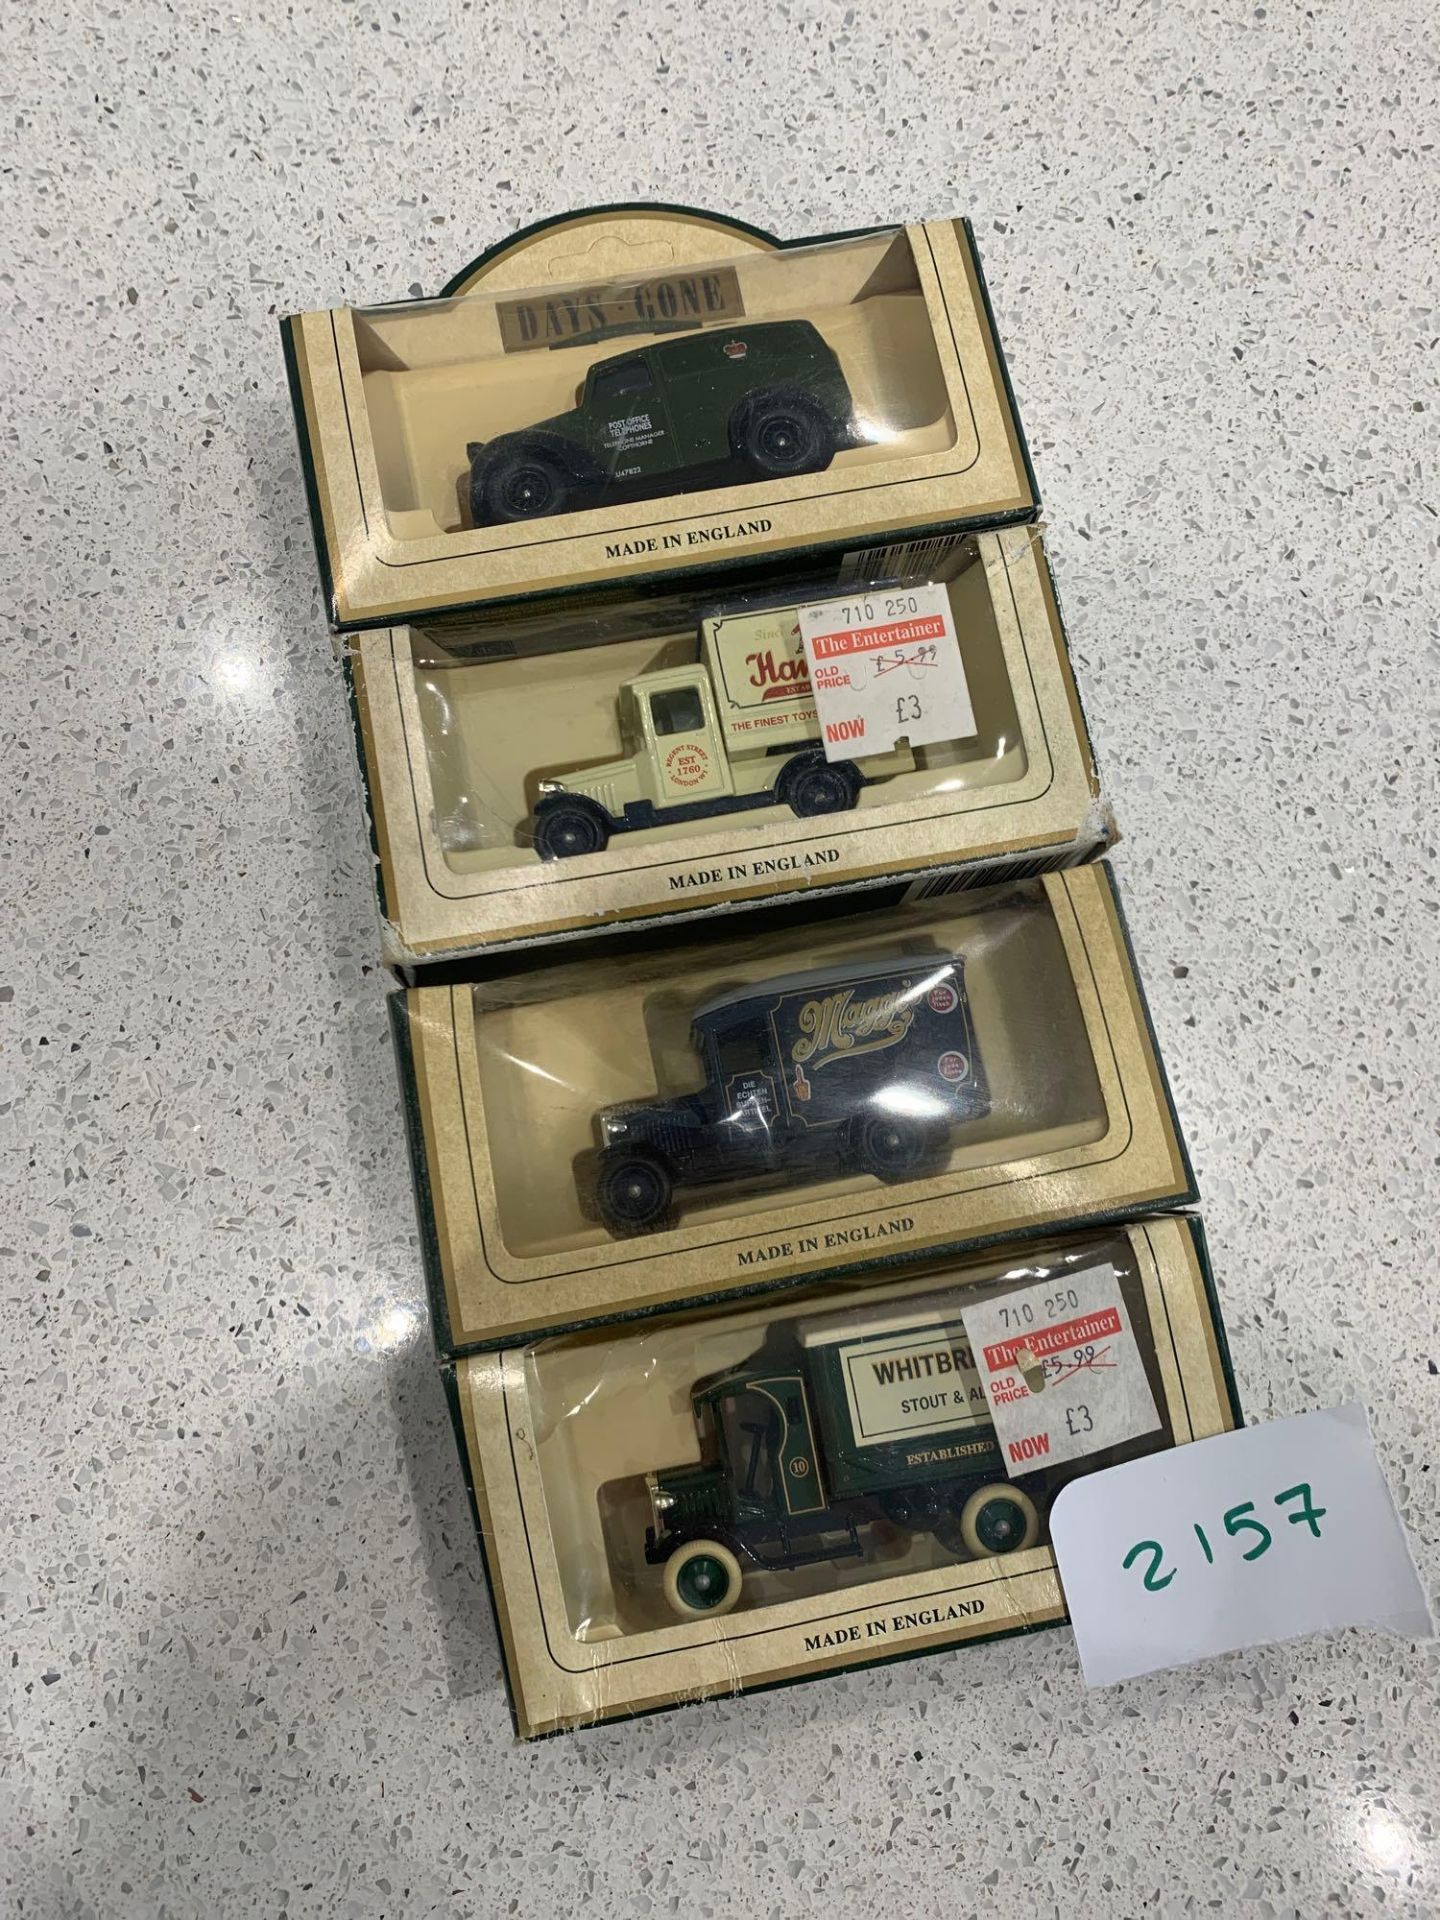 4 X Lledo Models (1) DG58000, Morris Z Van, Post Office Telephones. (2)Lledo Hamleys The Finest